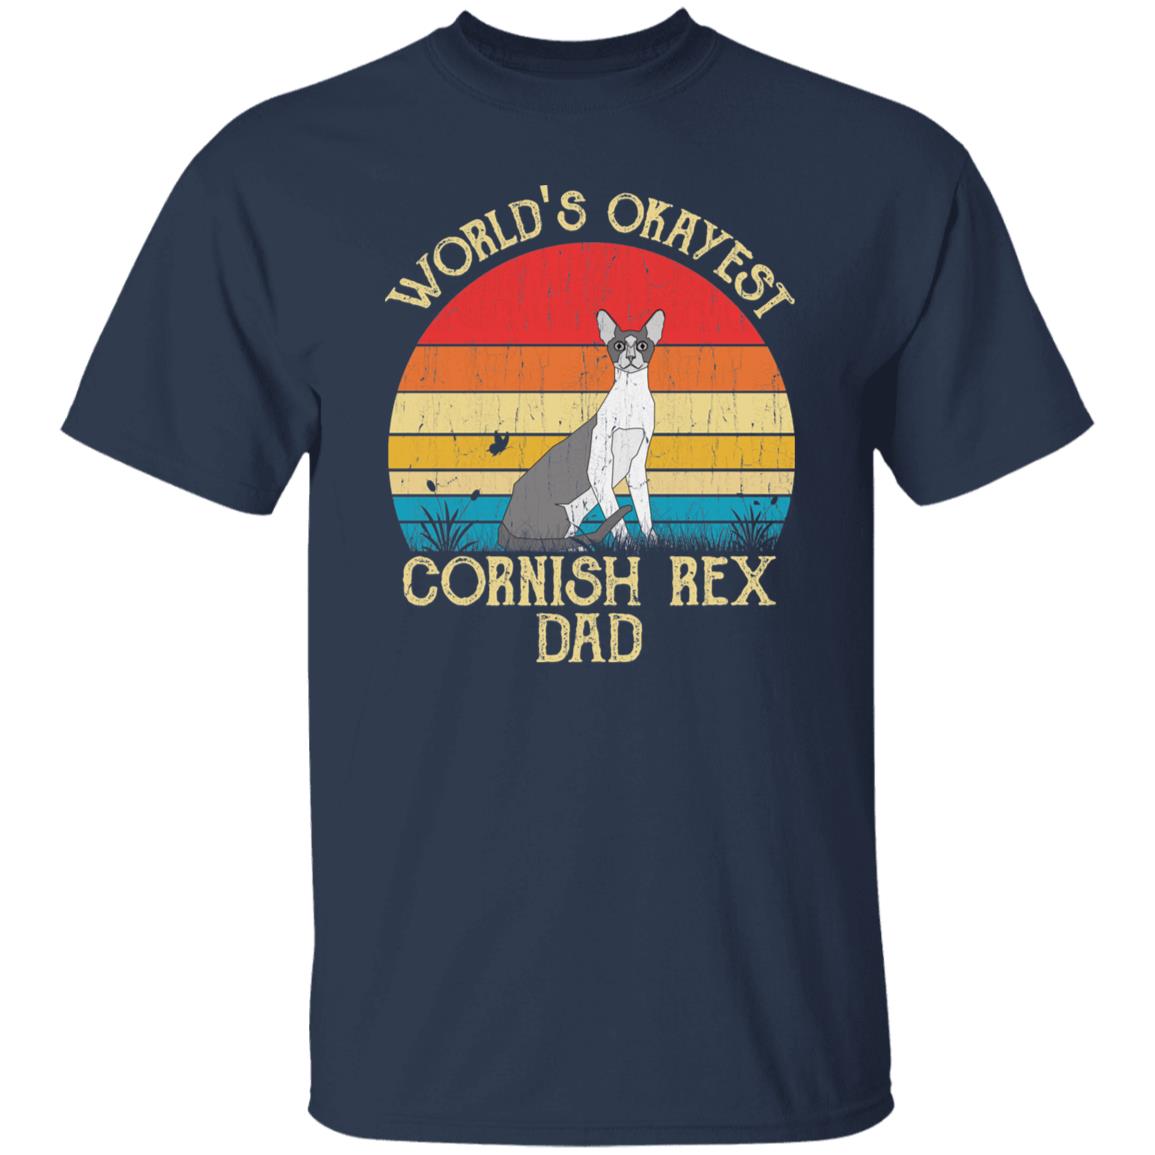 World's Okayest Cornish rex dad Retro Style Unisex T-shirt Black Navy Dark Heather-Navy-Family-Gift-Planet